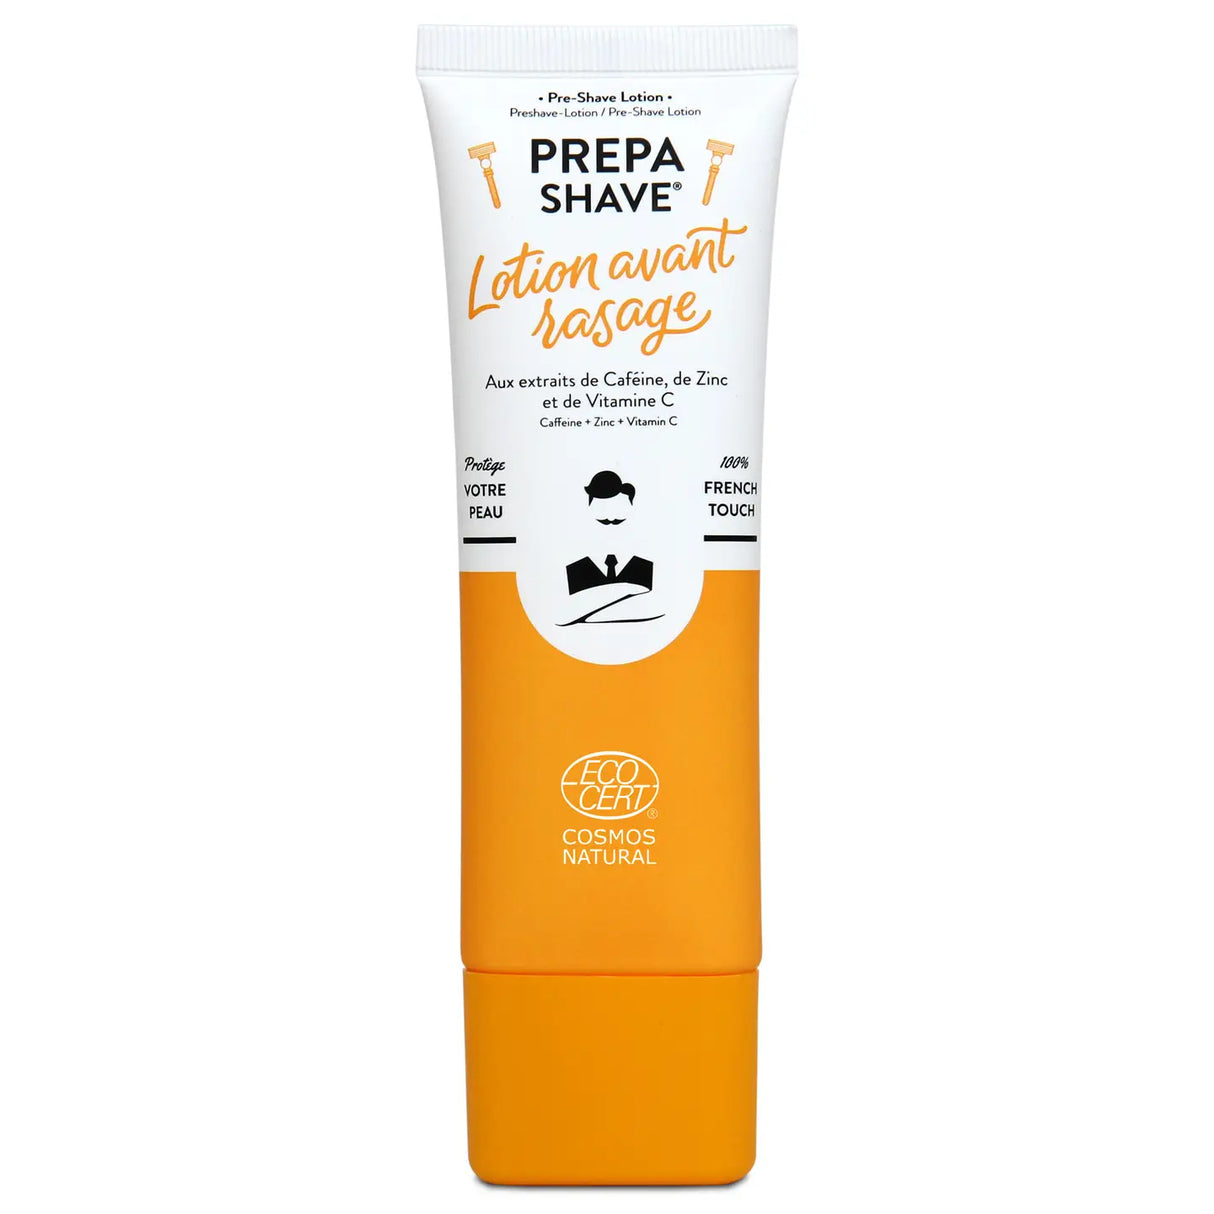 Monsieur Barbier - Prepa Shave - Pre-Shave Lotion - 75ml